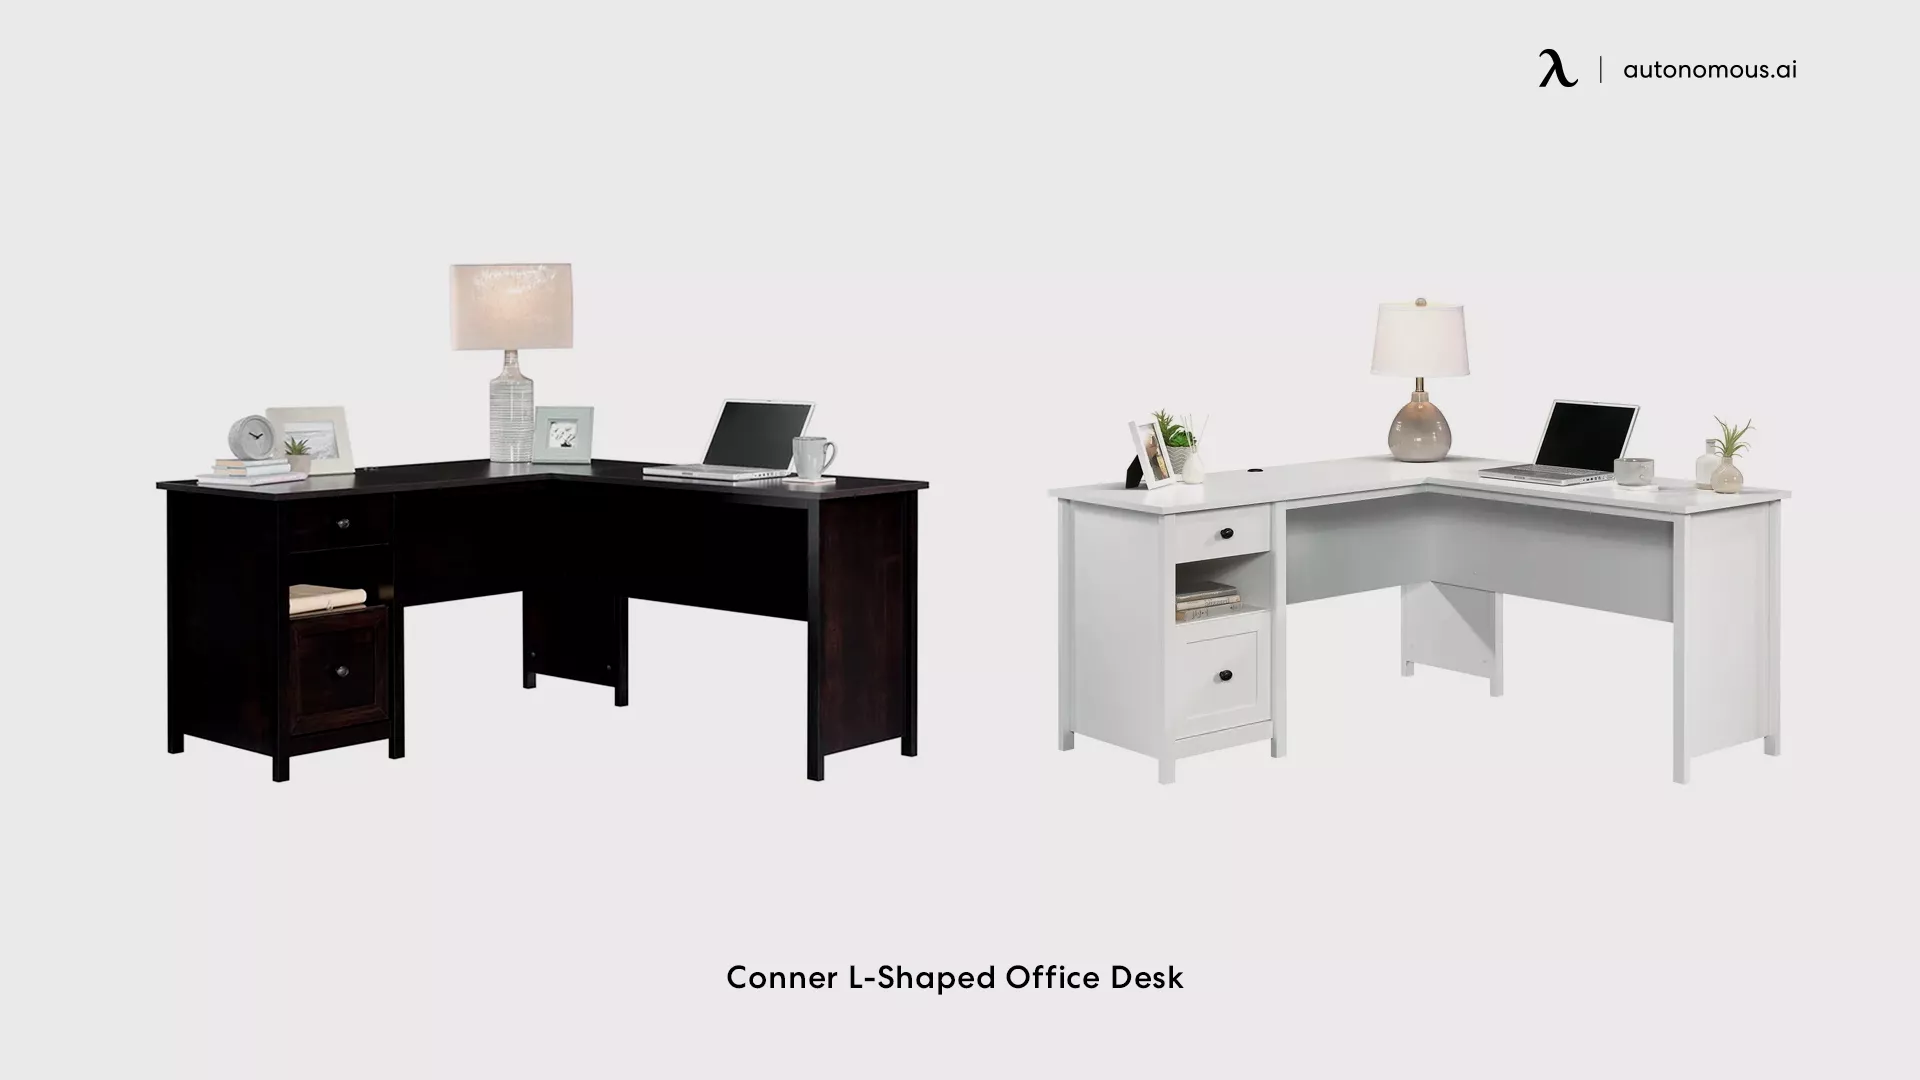 Conner L-Shaped Office Desk